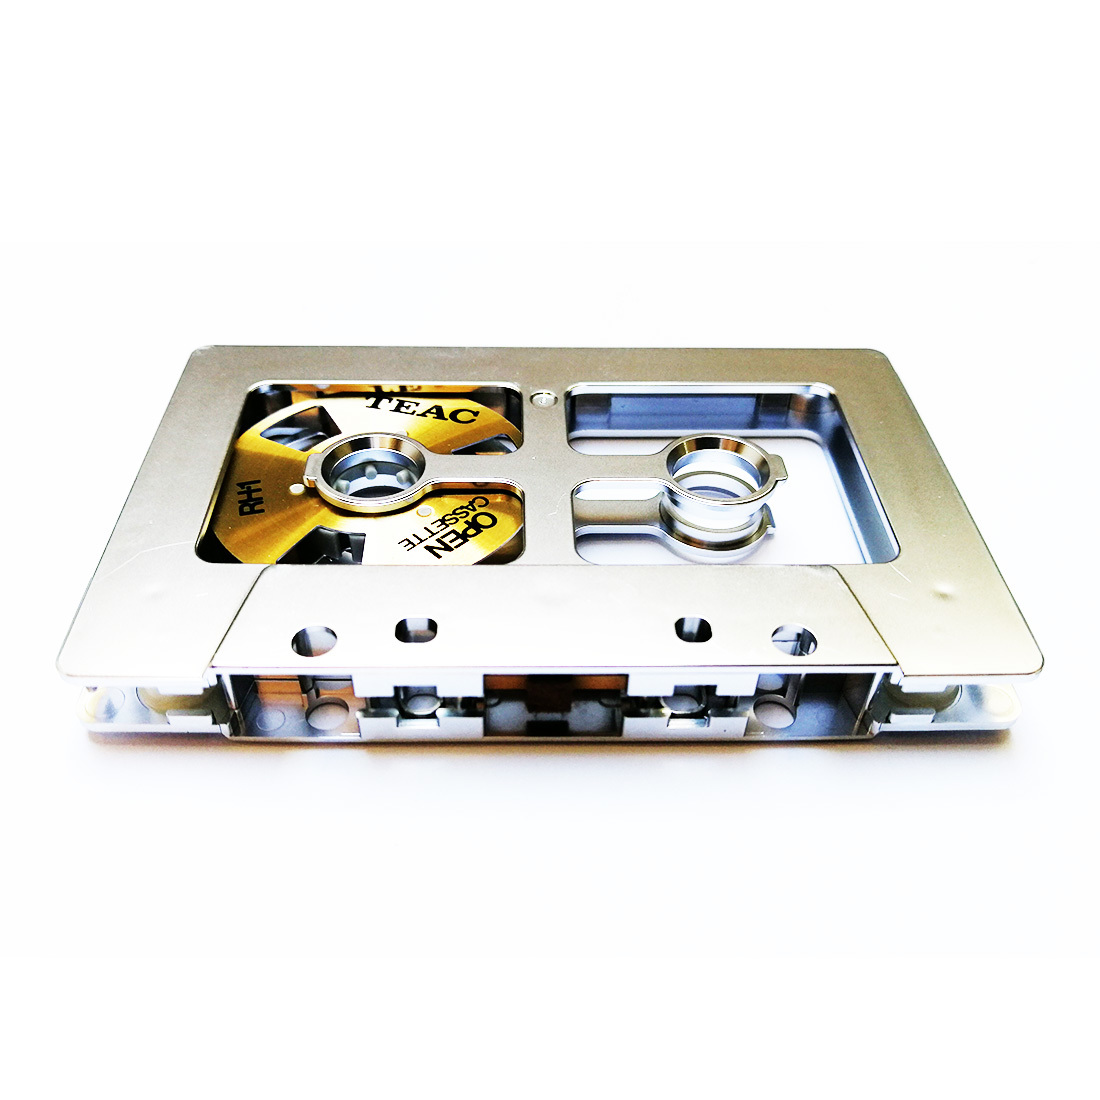 Teac Ocassse Open Cassette Reel to Reel OC-2N gold set - Retro